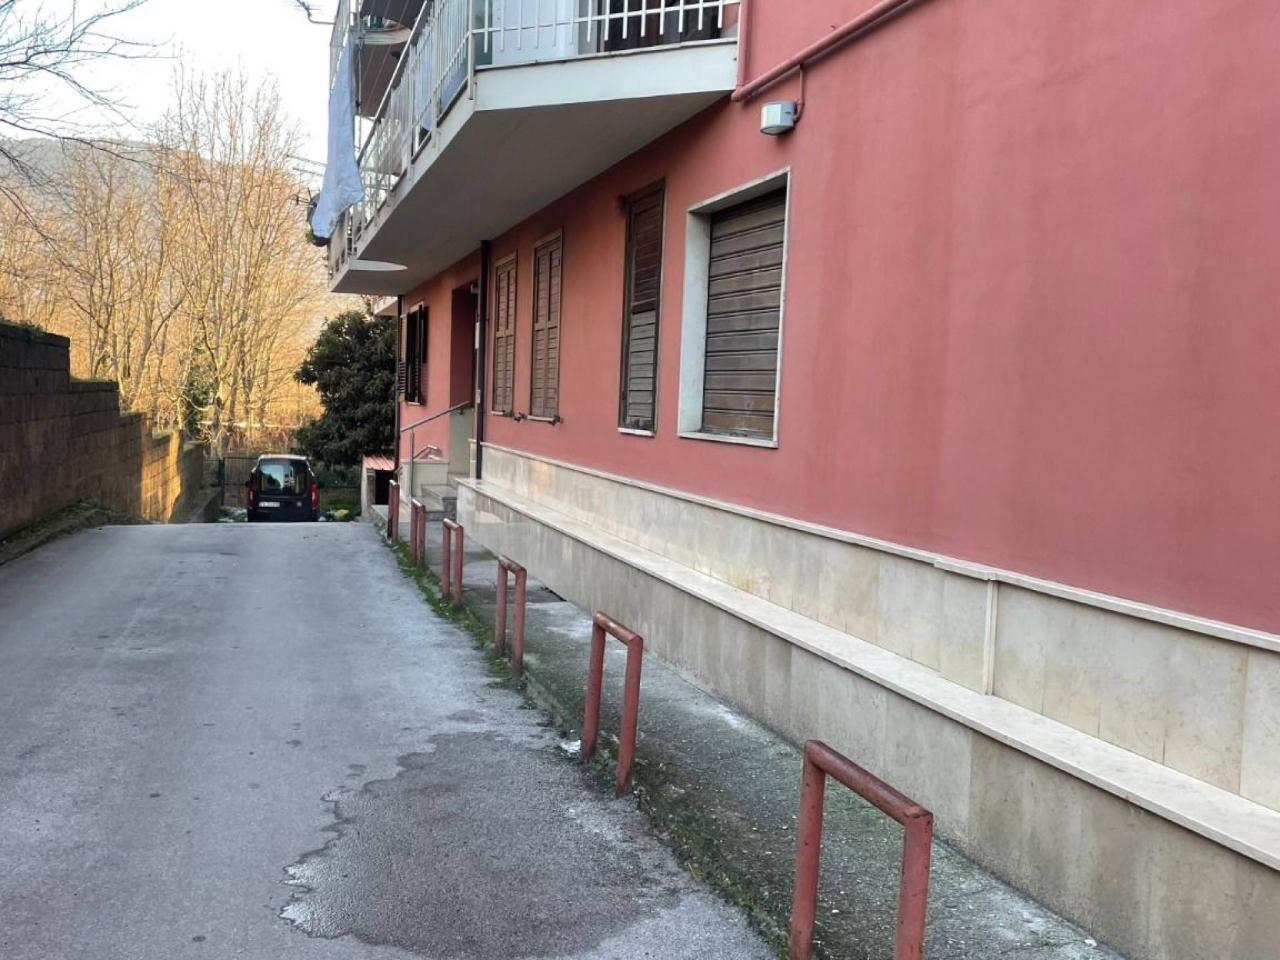 Appartamento in vendita a Monteforte Irpino